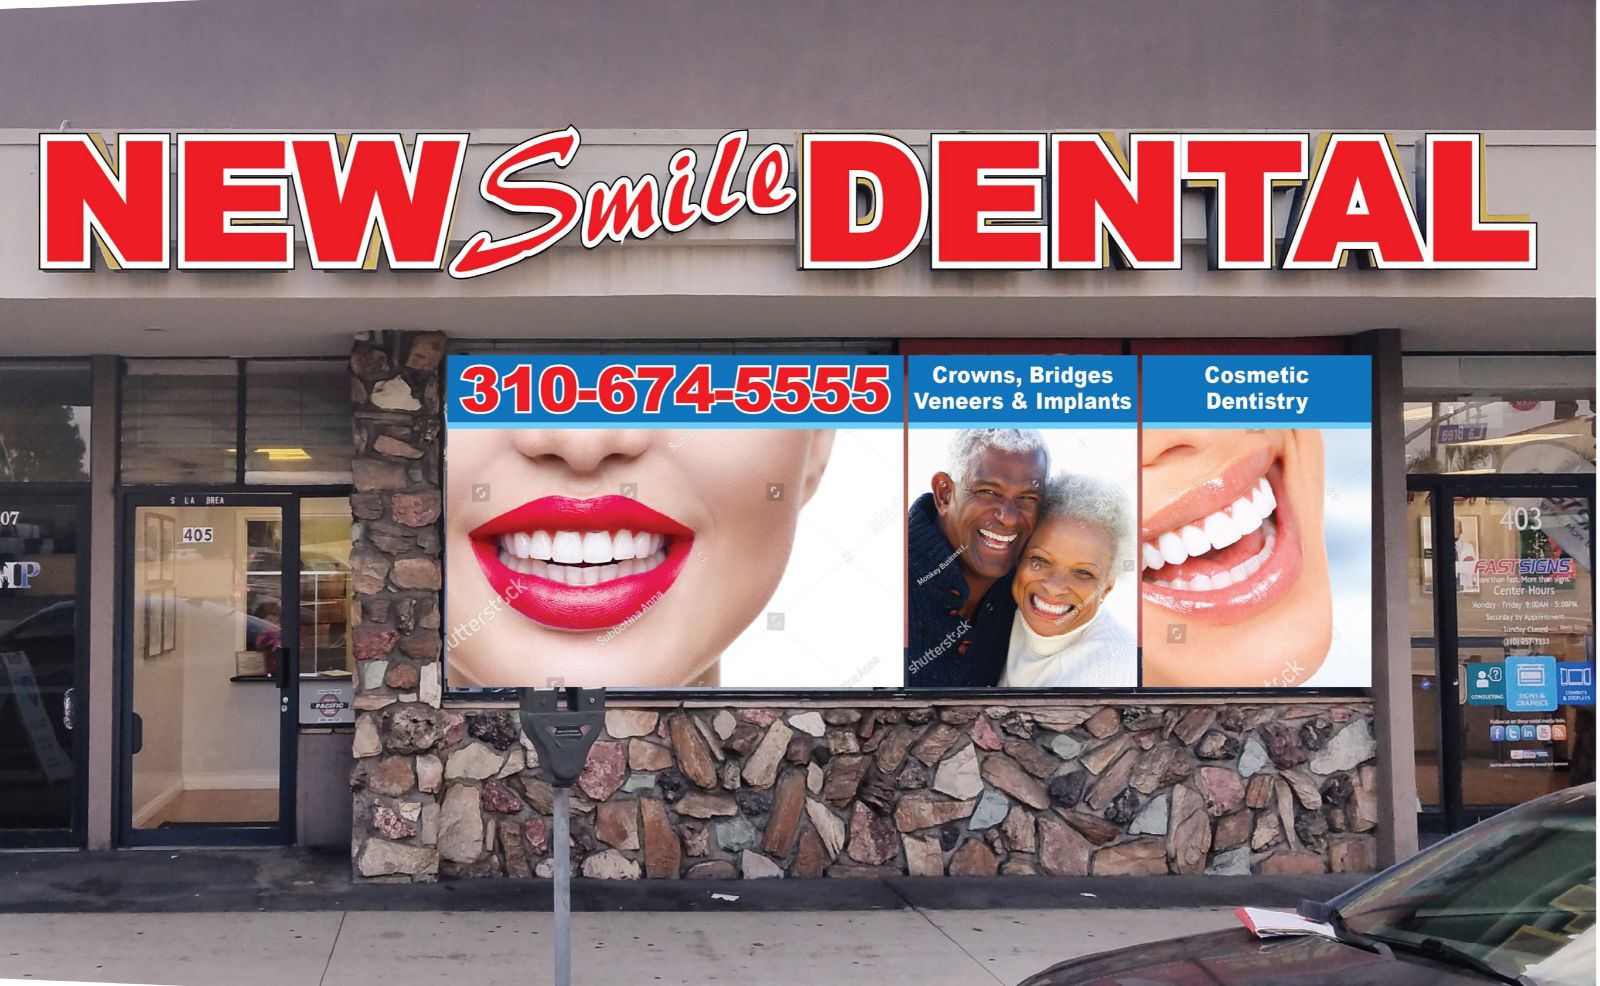 24 Hour Emergency Cosmetic Dentist Emergency Dentist - Dentist in Inglewood, CA